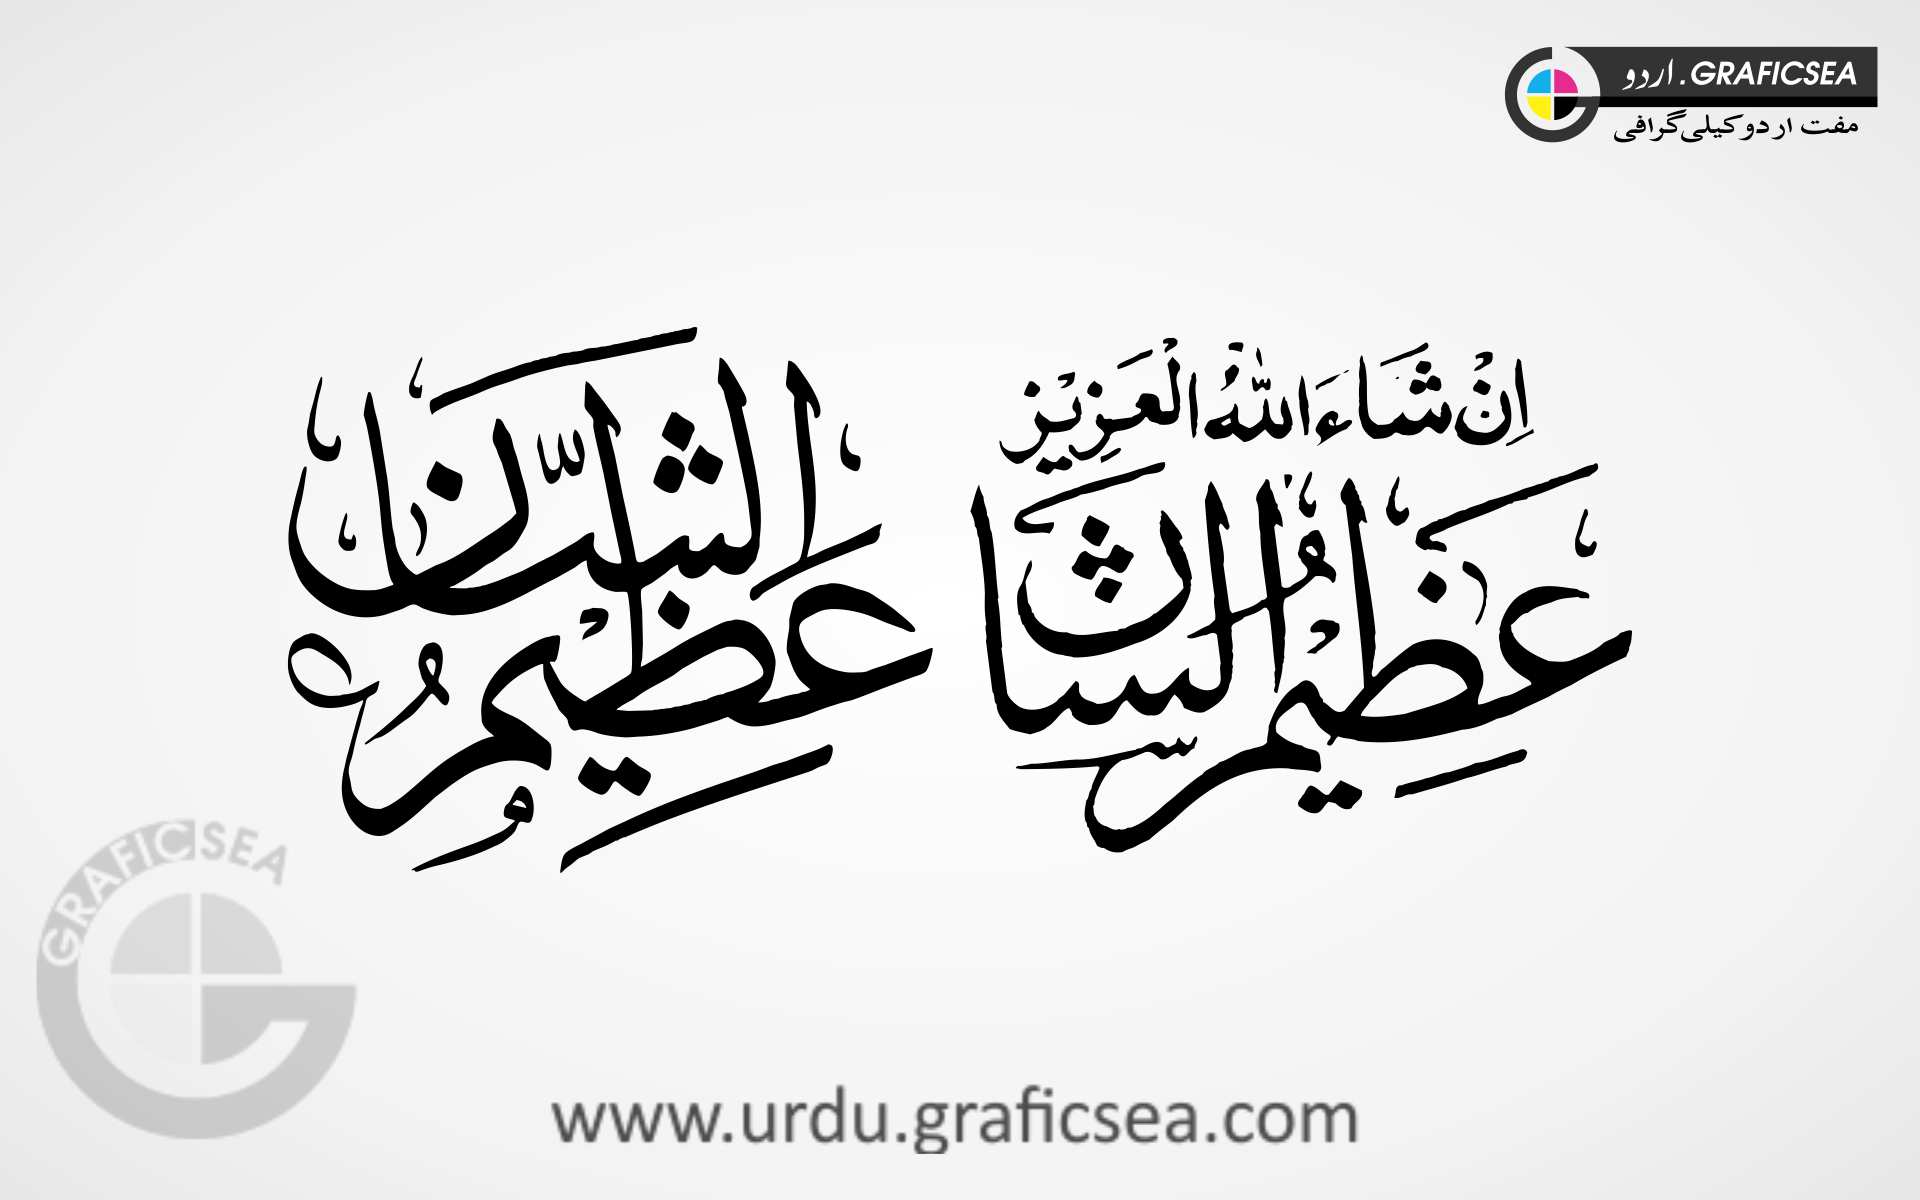 Azeem o Shaan 2 Style Urdu Calligraphy